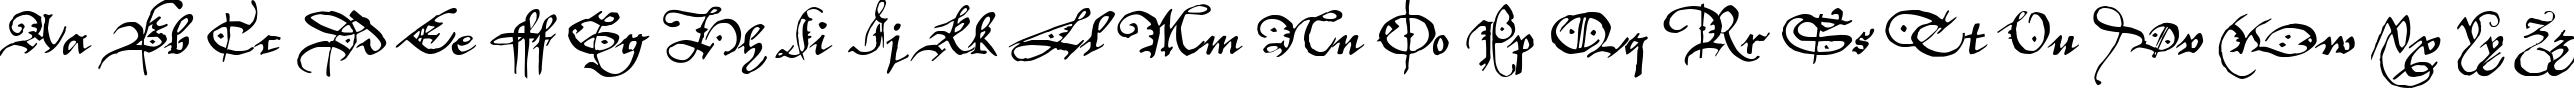 Пример написания английского алфавита шрифтом P22Elizabethan